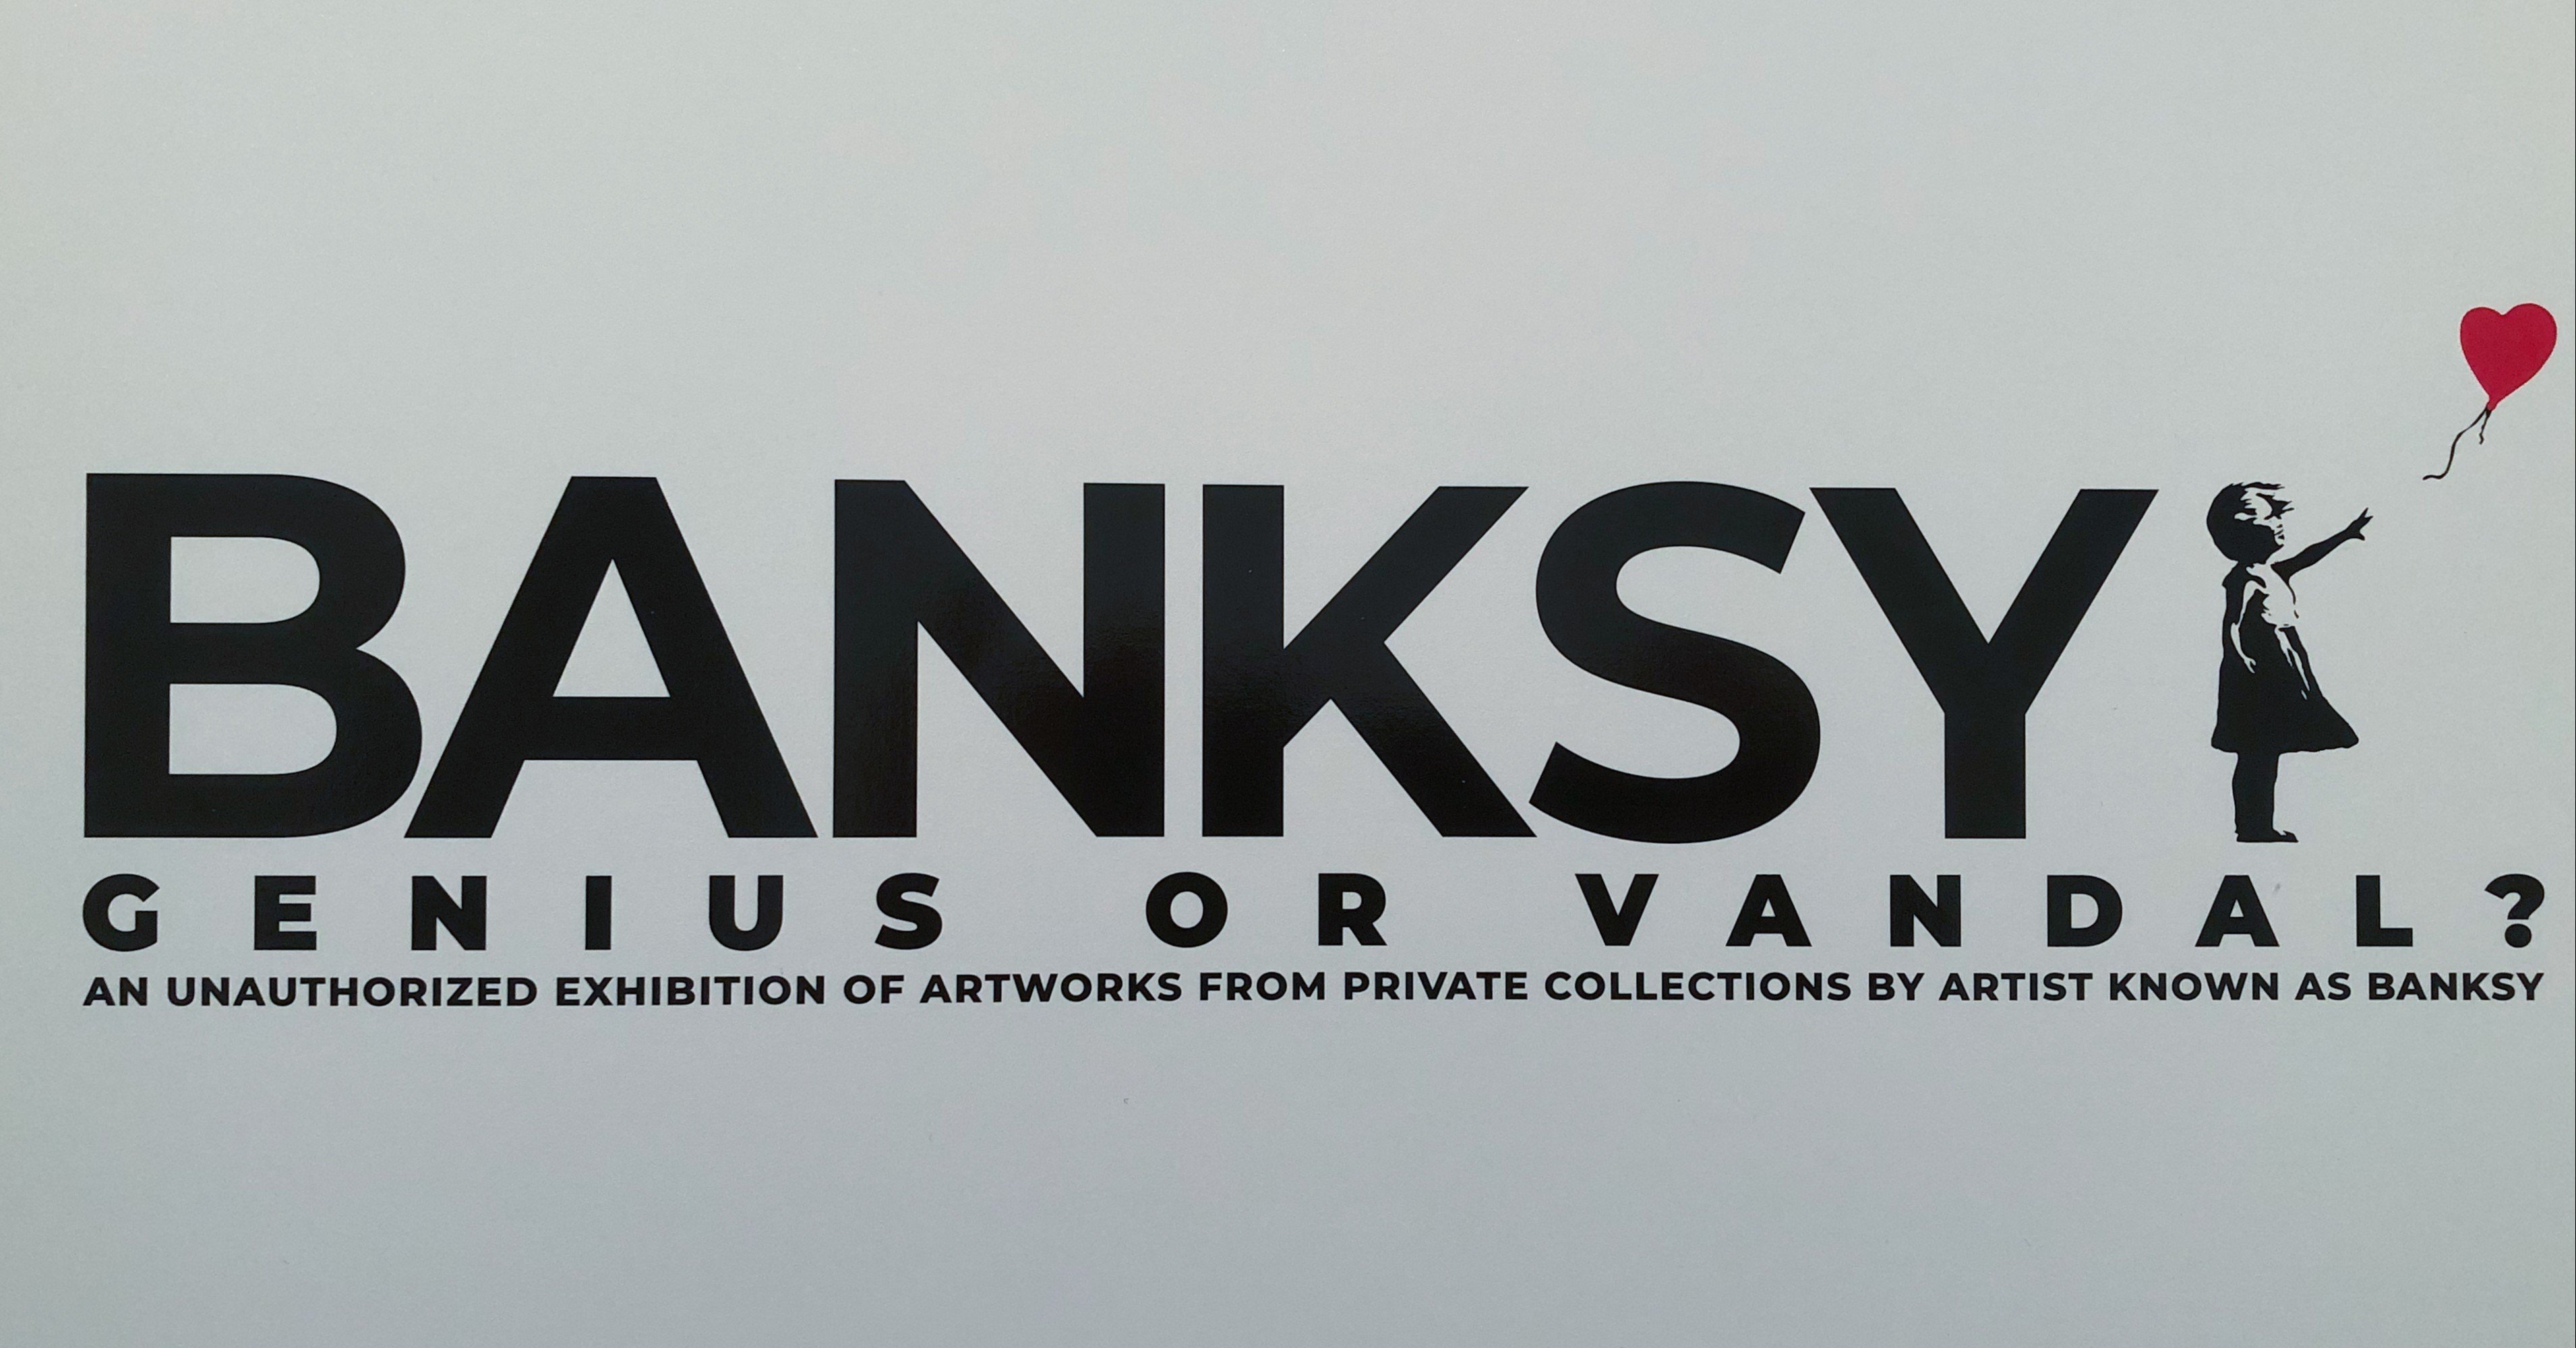 解釈あらため 私にだけの 意味と価値 Banksy展review 38b Note